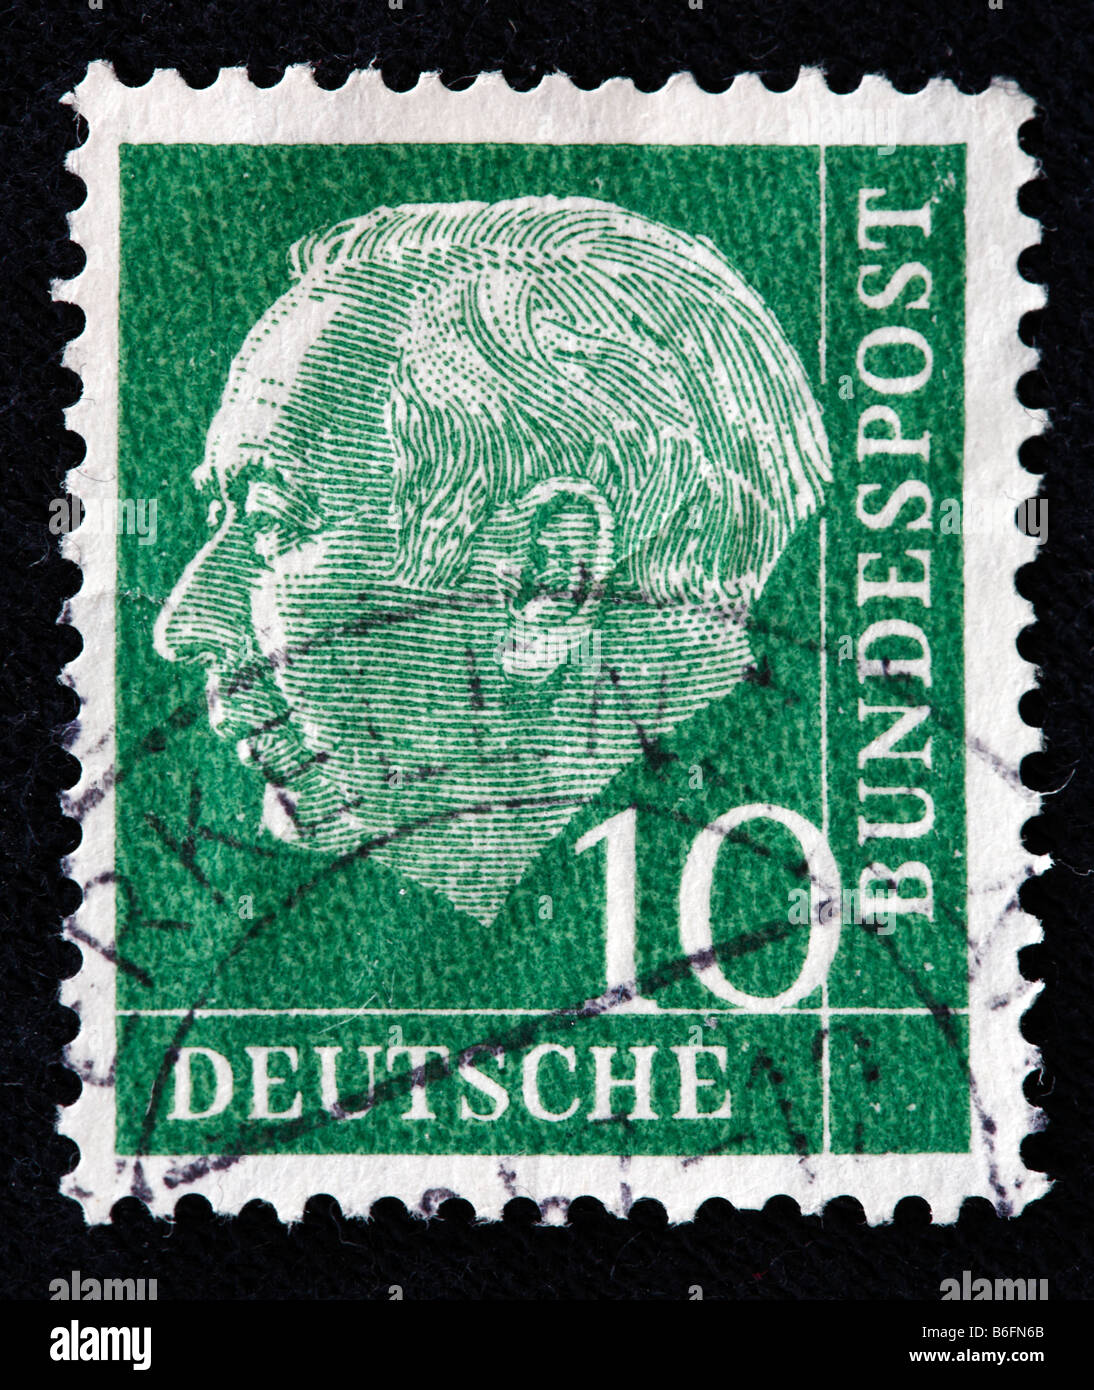 Theodor Heuss, Präsident der Bundesrepublik Deutschland (1949-1959), Briefmarke, Deutschland Stockfoto